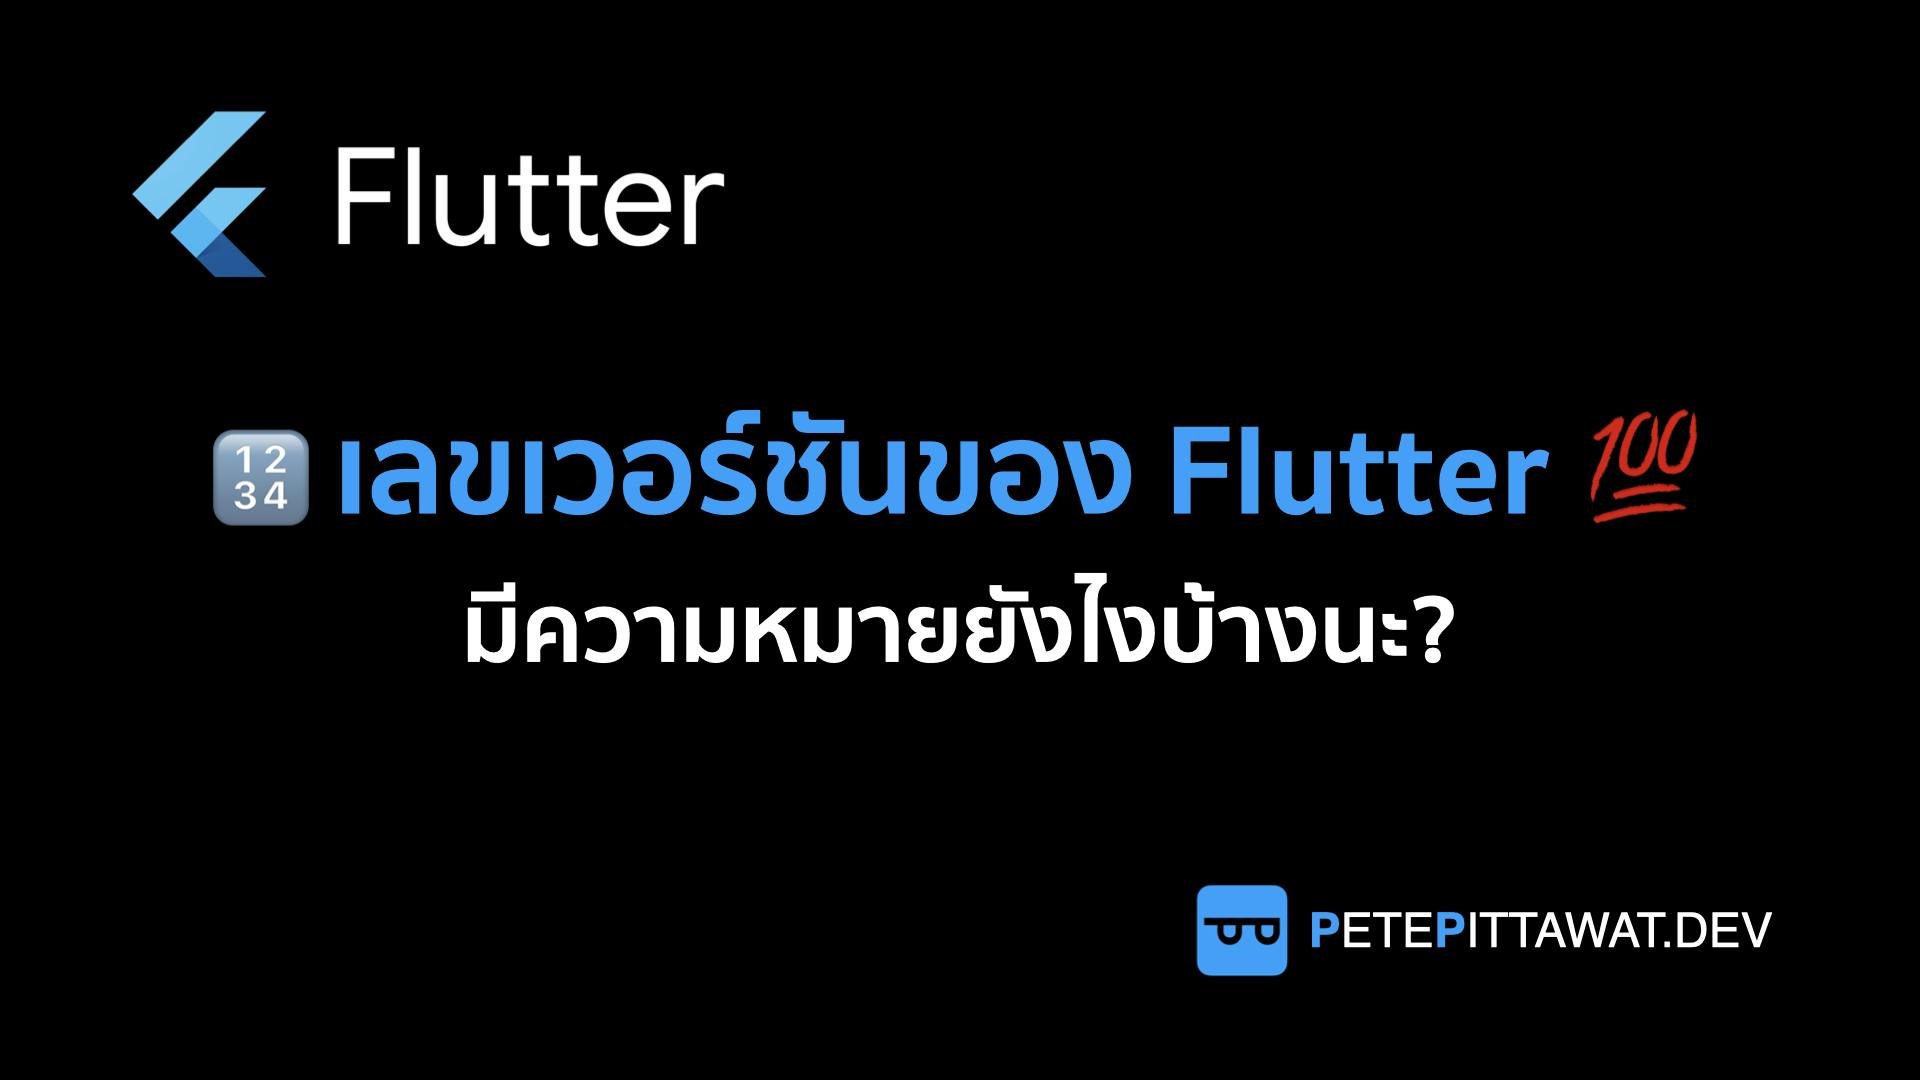 Cover Image for Flutter: เลขเวอร์ชันของ Flutter มีความหมายอย่างไรบ้าง?